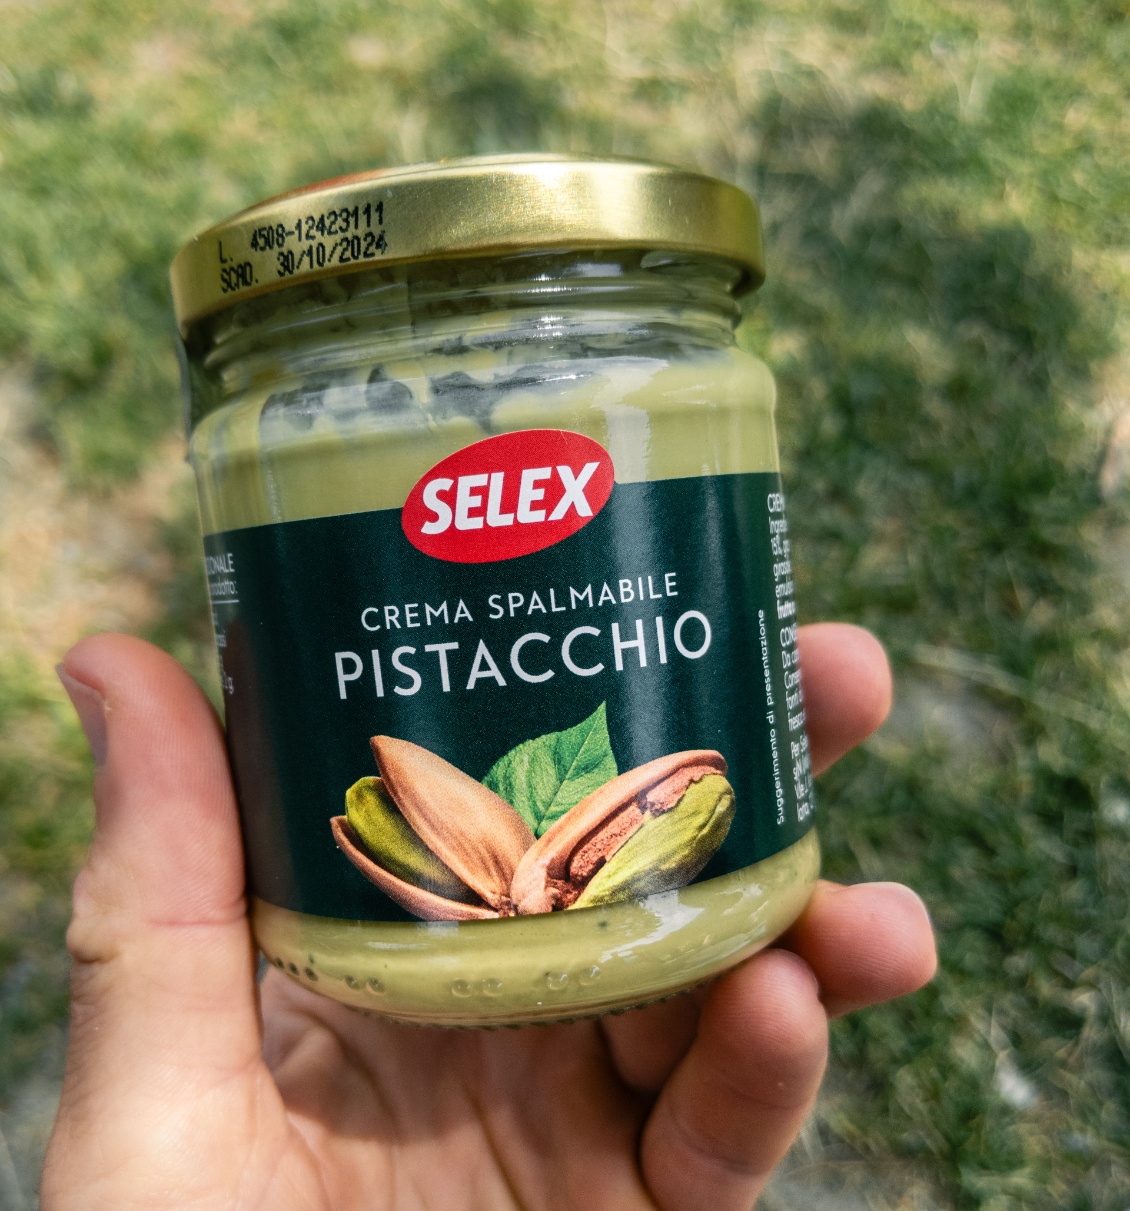 Trouvaille italienne : un genre de Nocciolata, mais à la pistache (au lieu de la noisette). Un pistacchiolata quoi :)